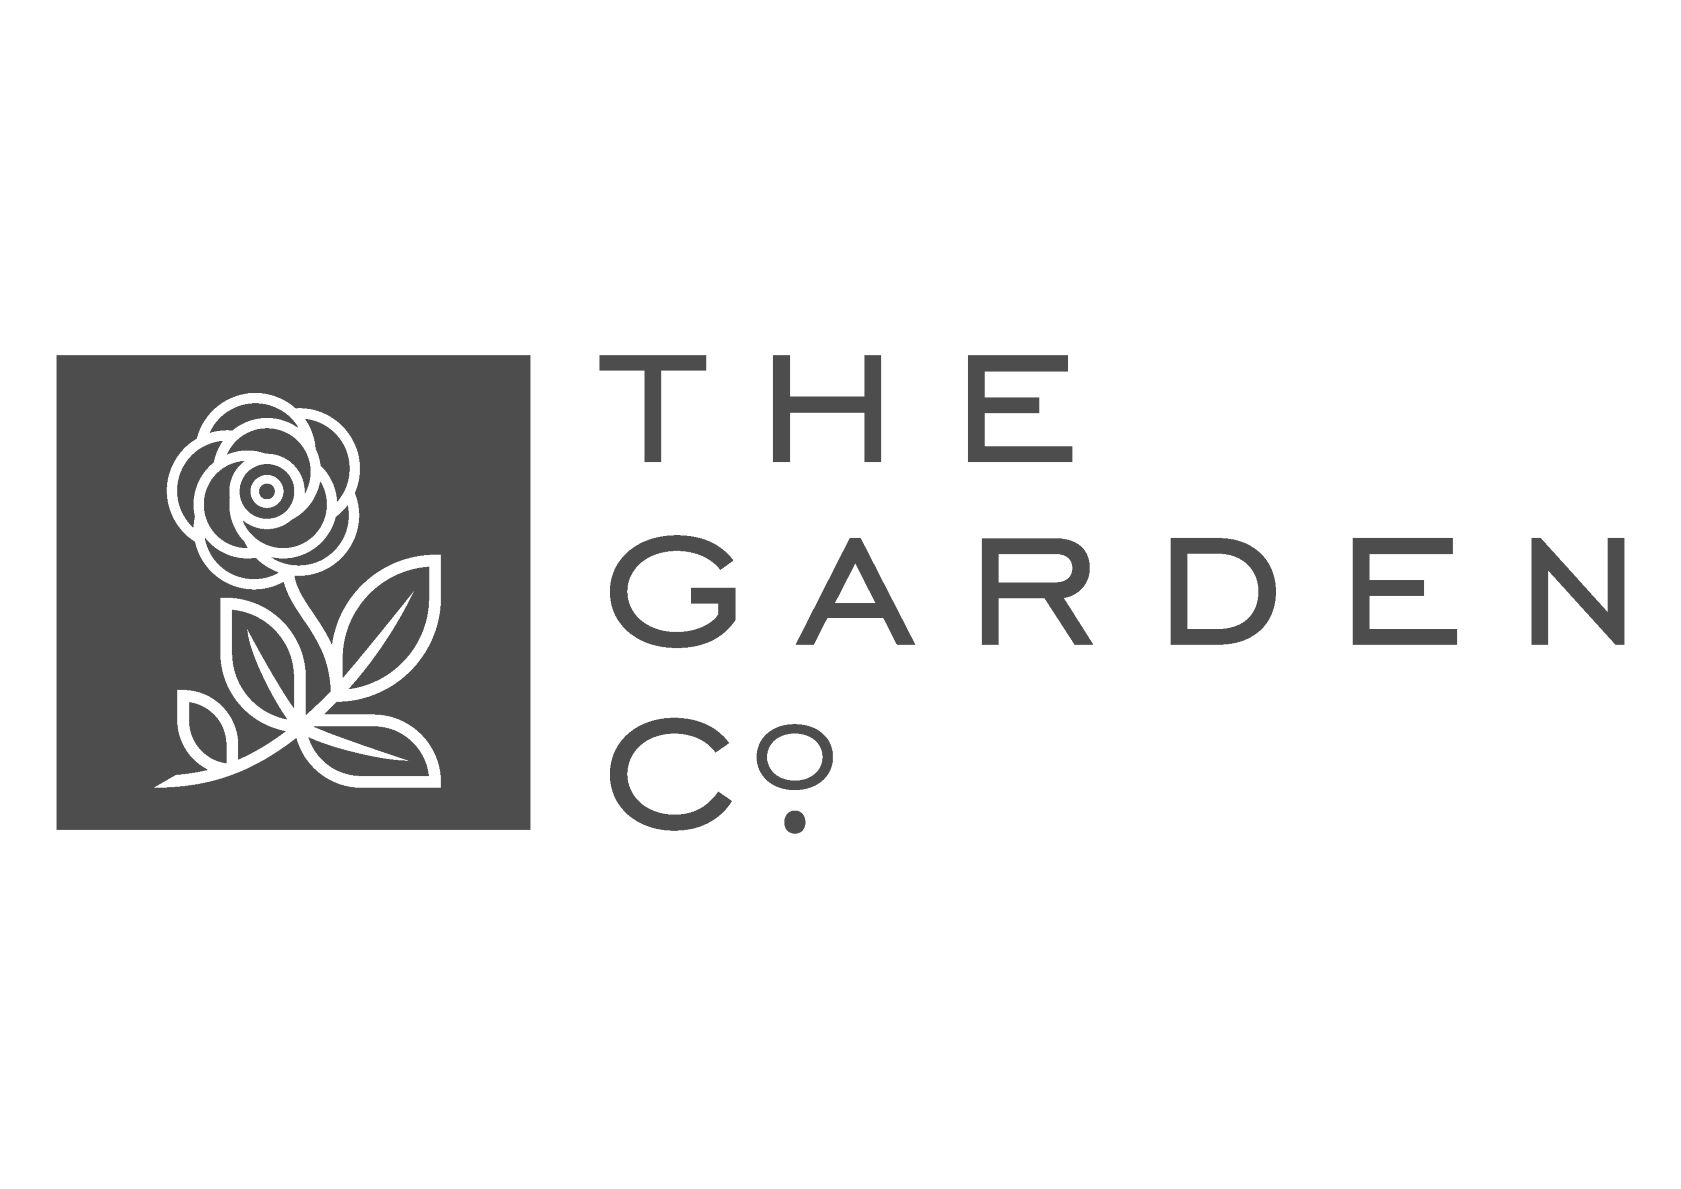 THE GARDEN logo